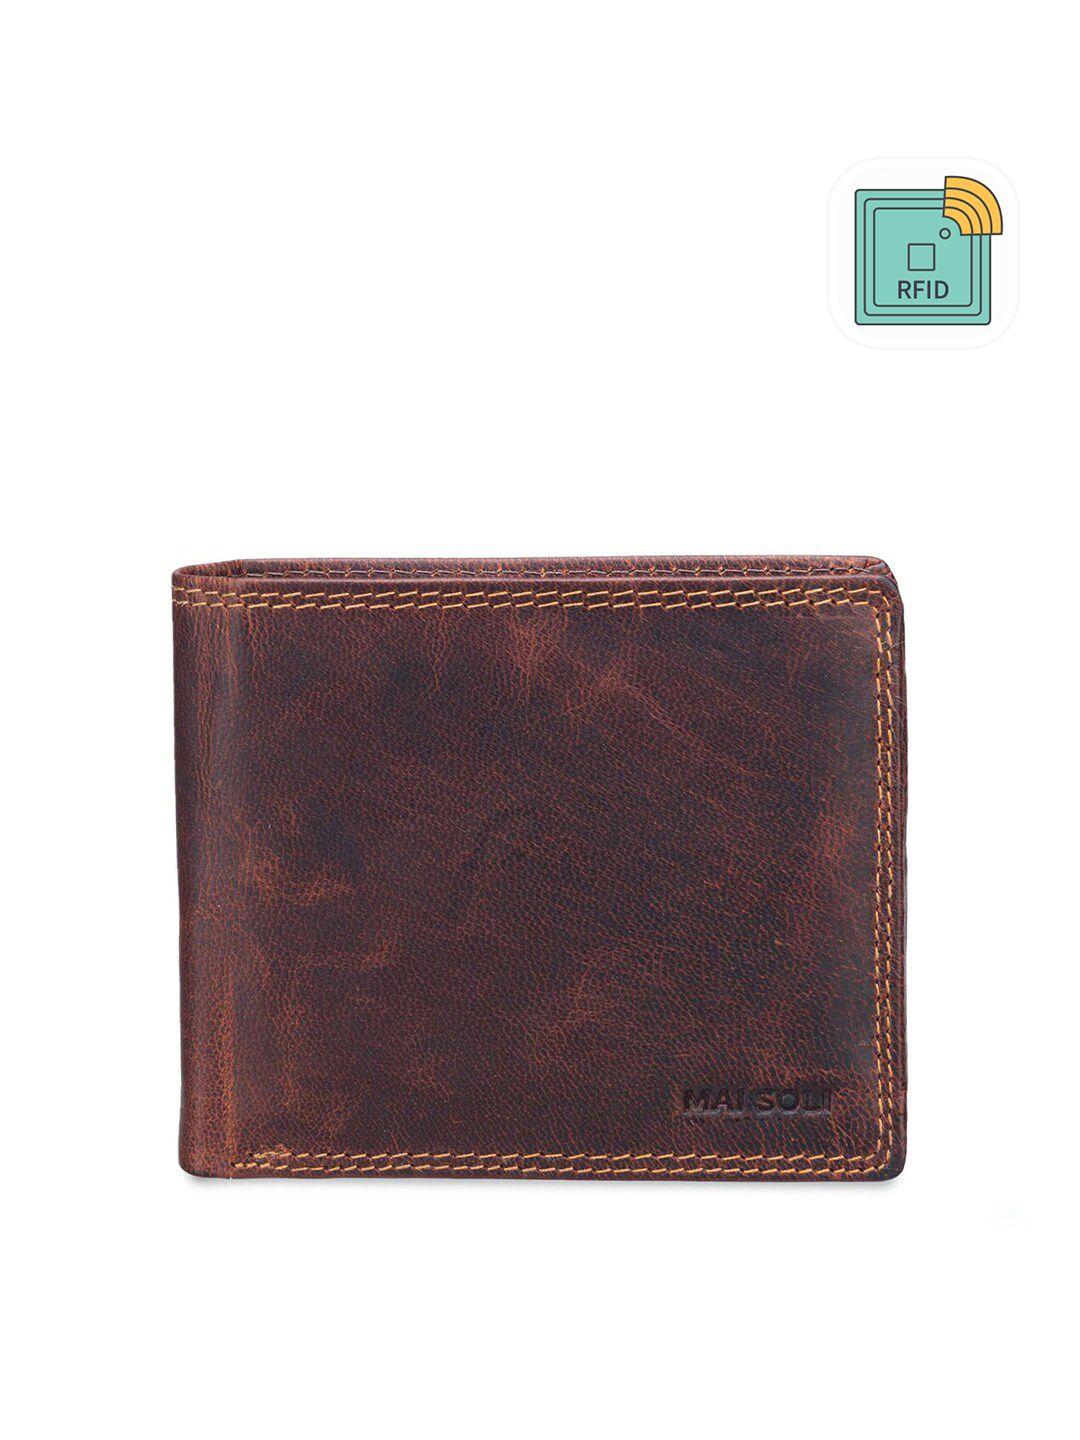 mai soli men brown genuine leather rfid dark vintage two fold wallet with flap & loop